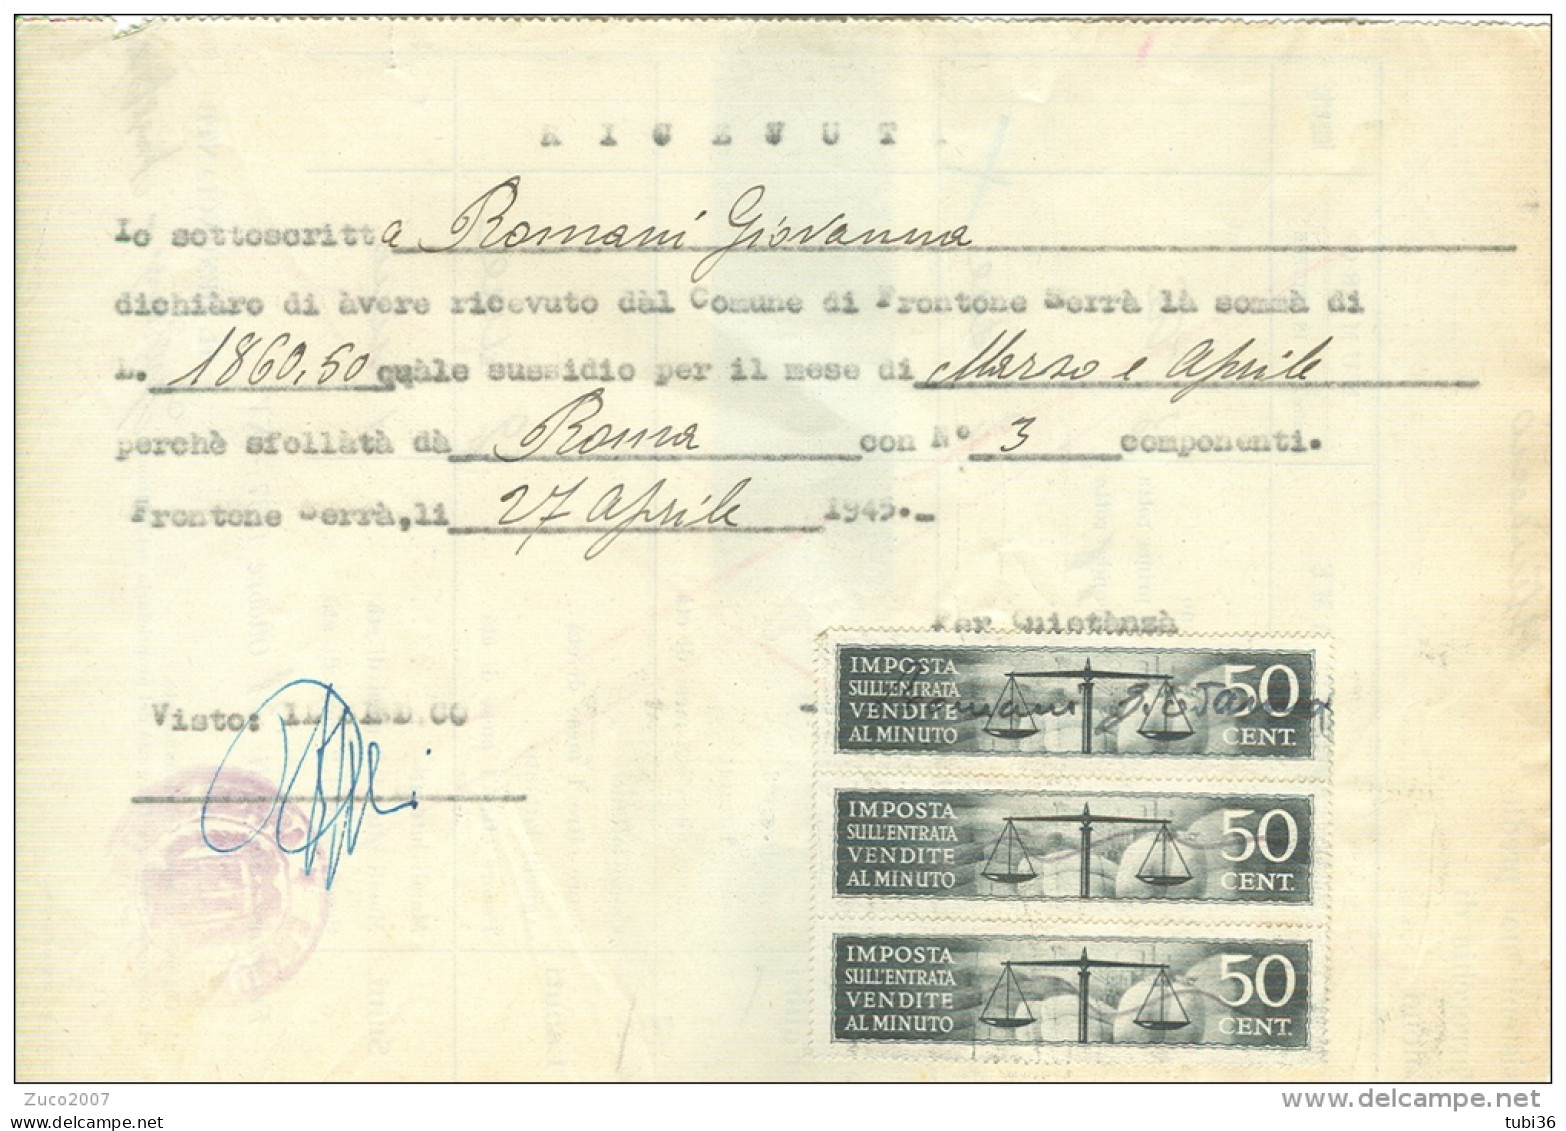 COMUNE DI FRONTONE SERRA,PESARO,  IMPOSTA ENTRATA , VENDITE AL MINUTO, Cent:50 X 3, MARCHE  SU RICEVUTA SUSSIDIO, 1945, - Revenue Stamps